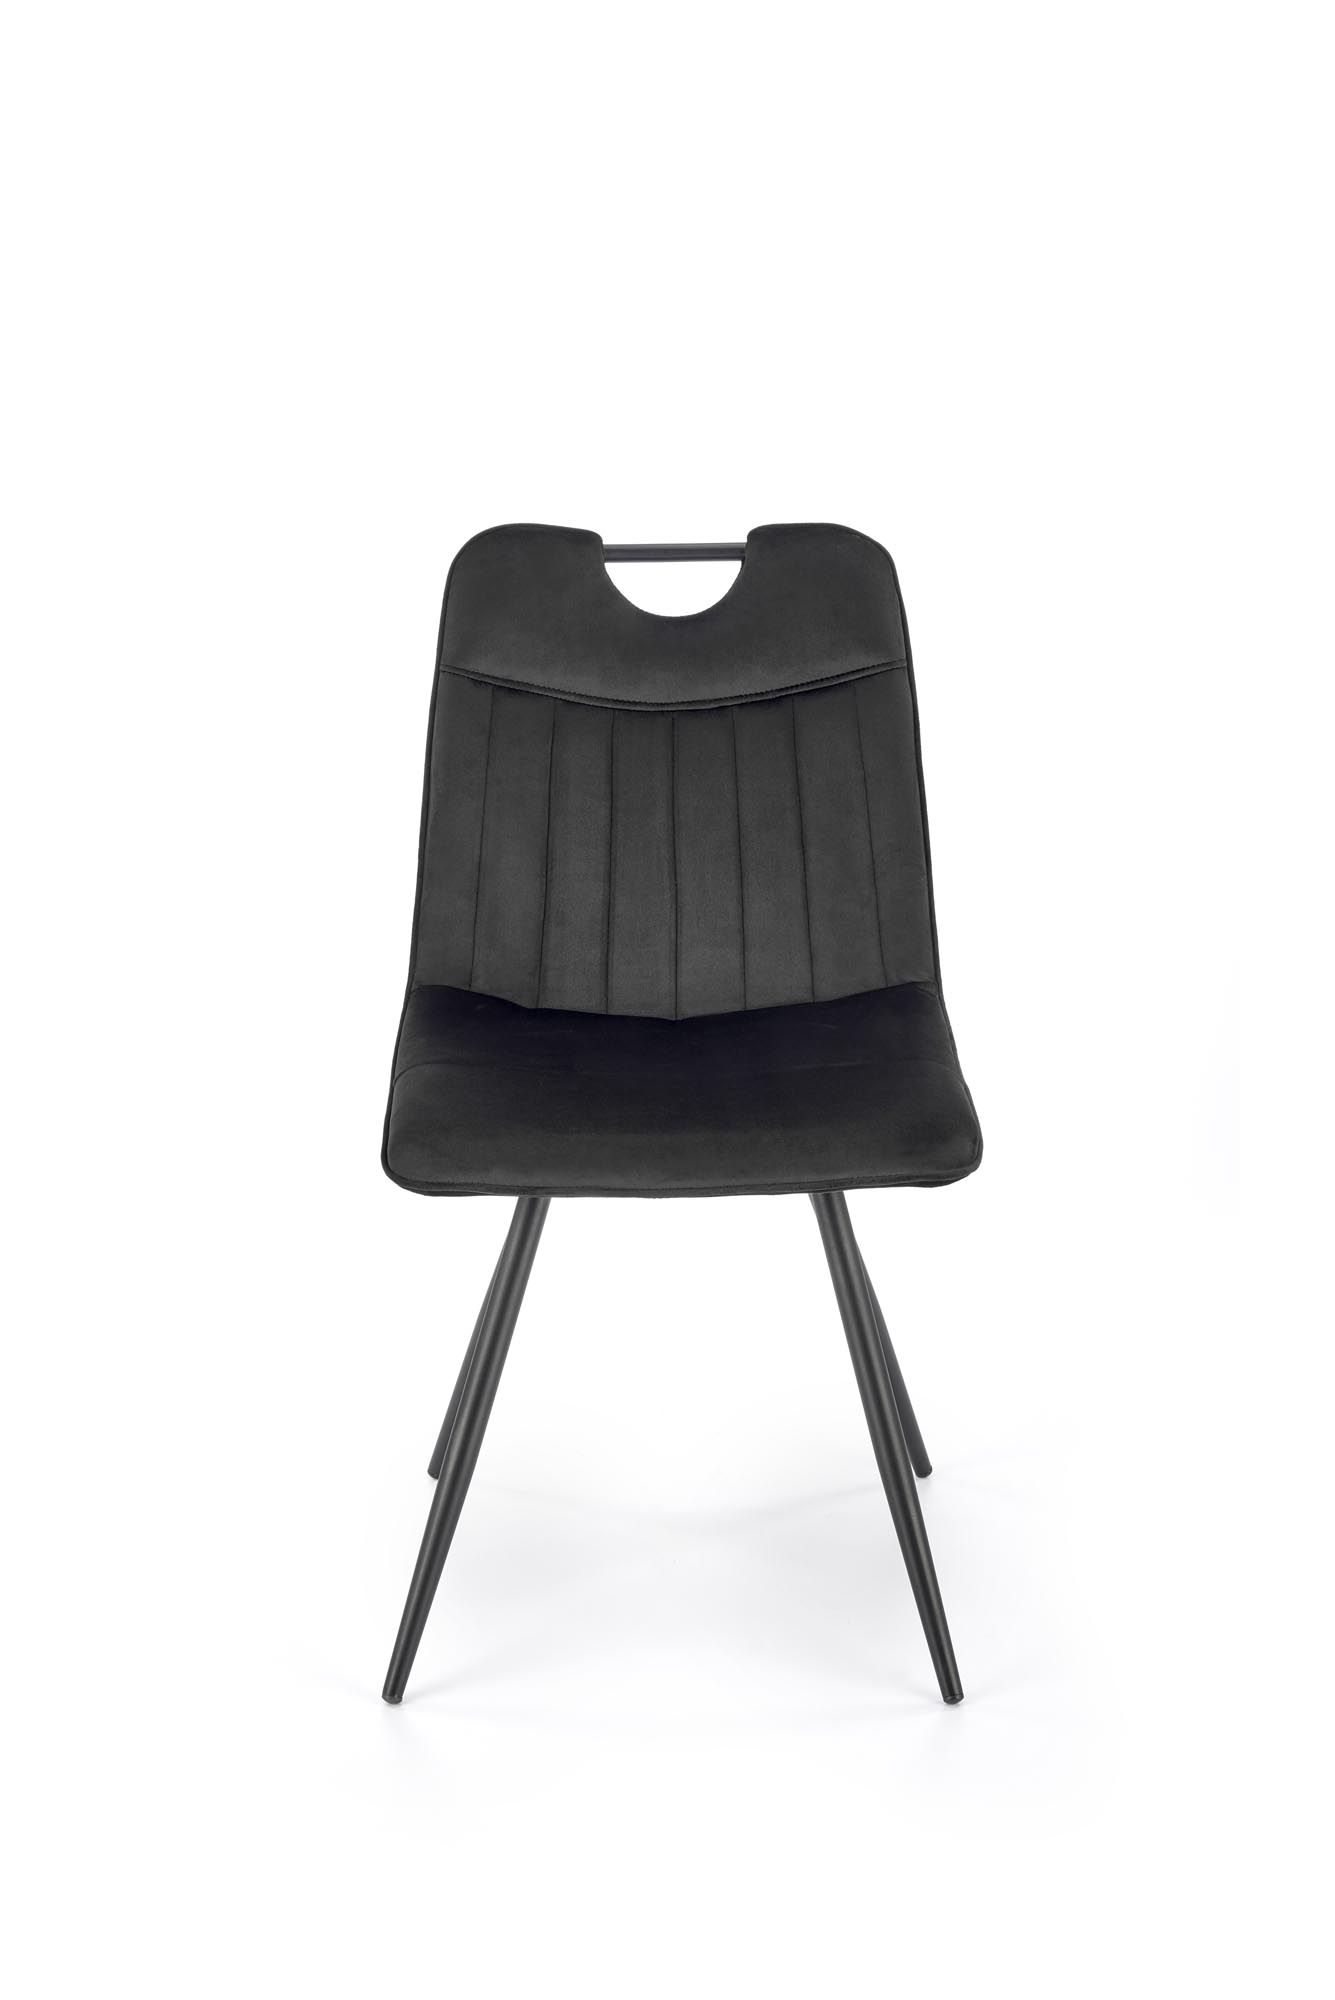 K521 Židle Fekete Židle čalouněné k521 - Fekete